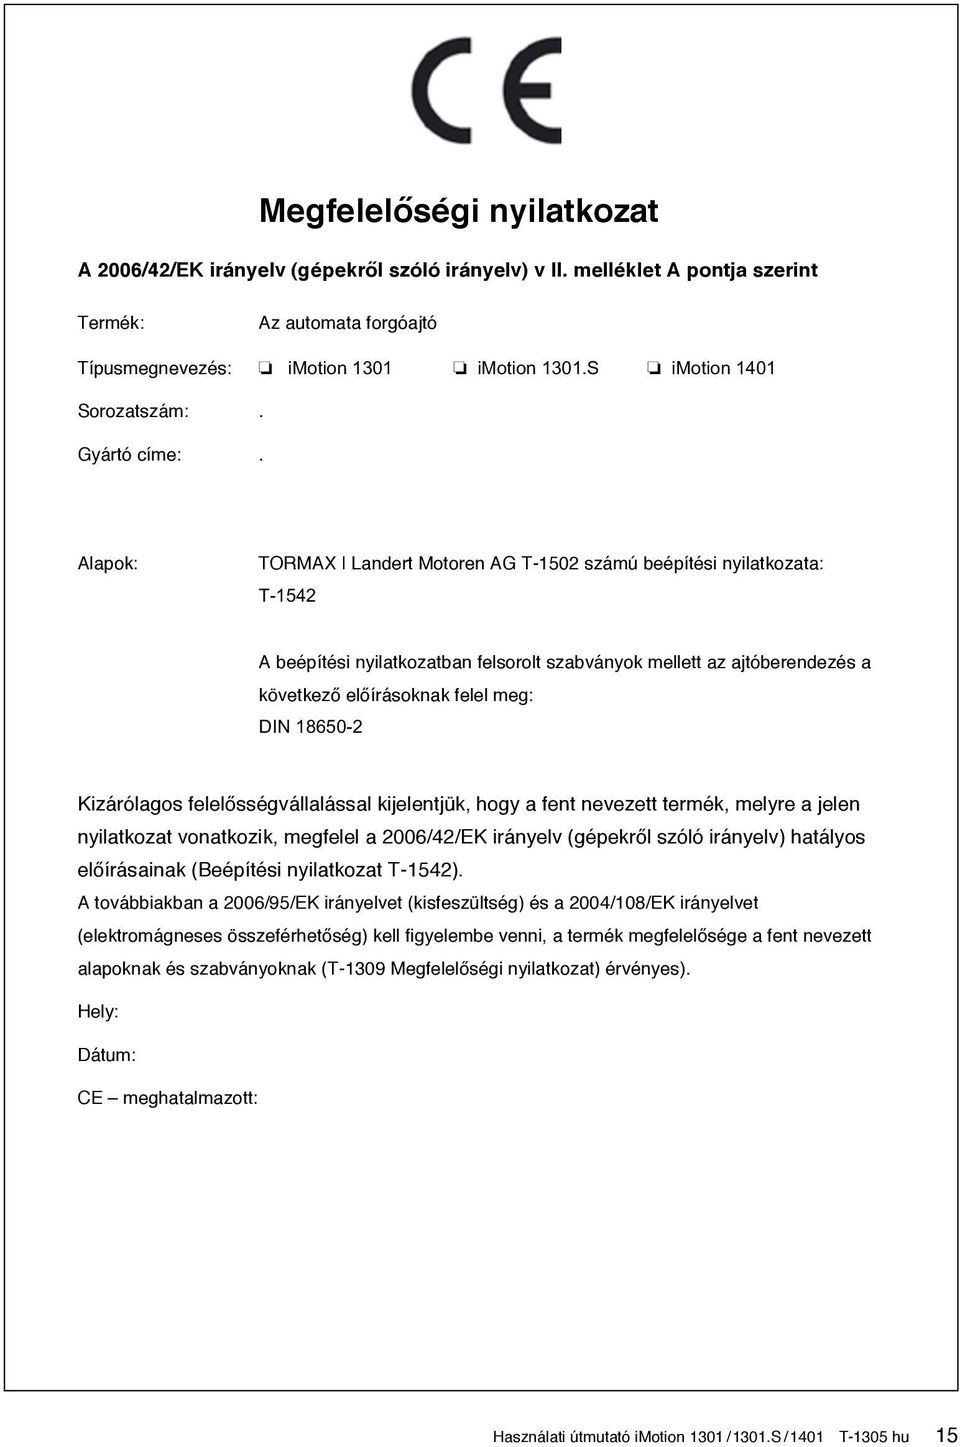 Alapok: TORMAX Landert Motoren AG T-1502 számú beépítési nyilatkozata: T-1542 A beépítési nyilatkozatban felsorolt szabványok mellett az ajtóberendezés a következő előírásoknak felel meg: DIN 18650-2